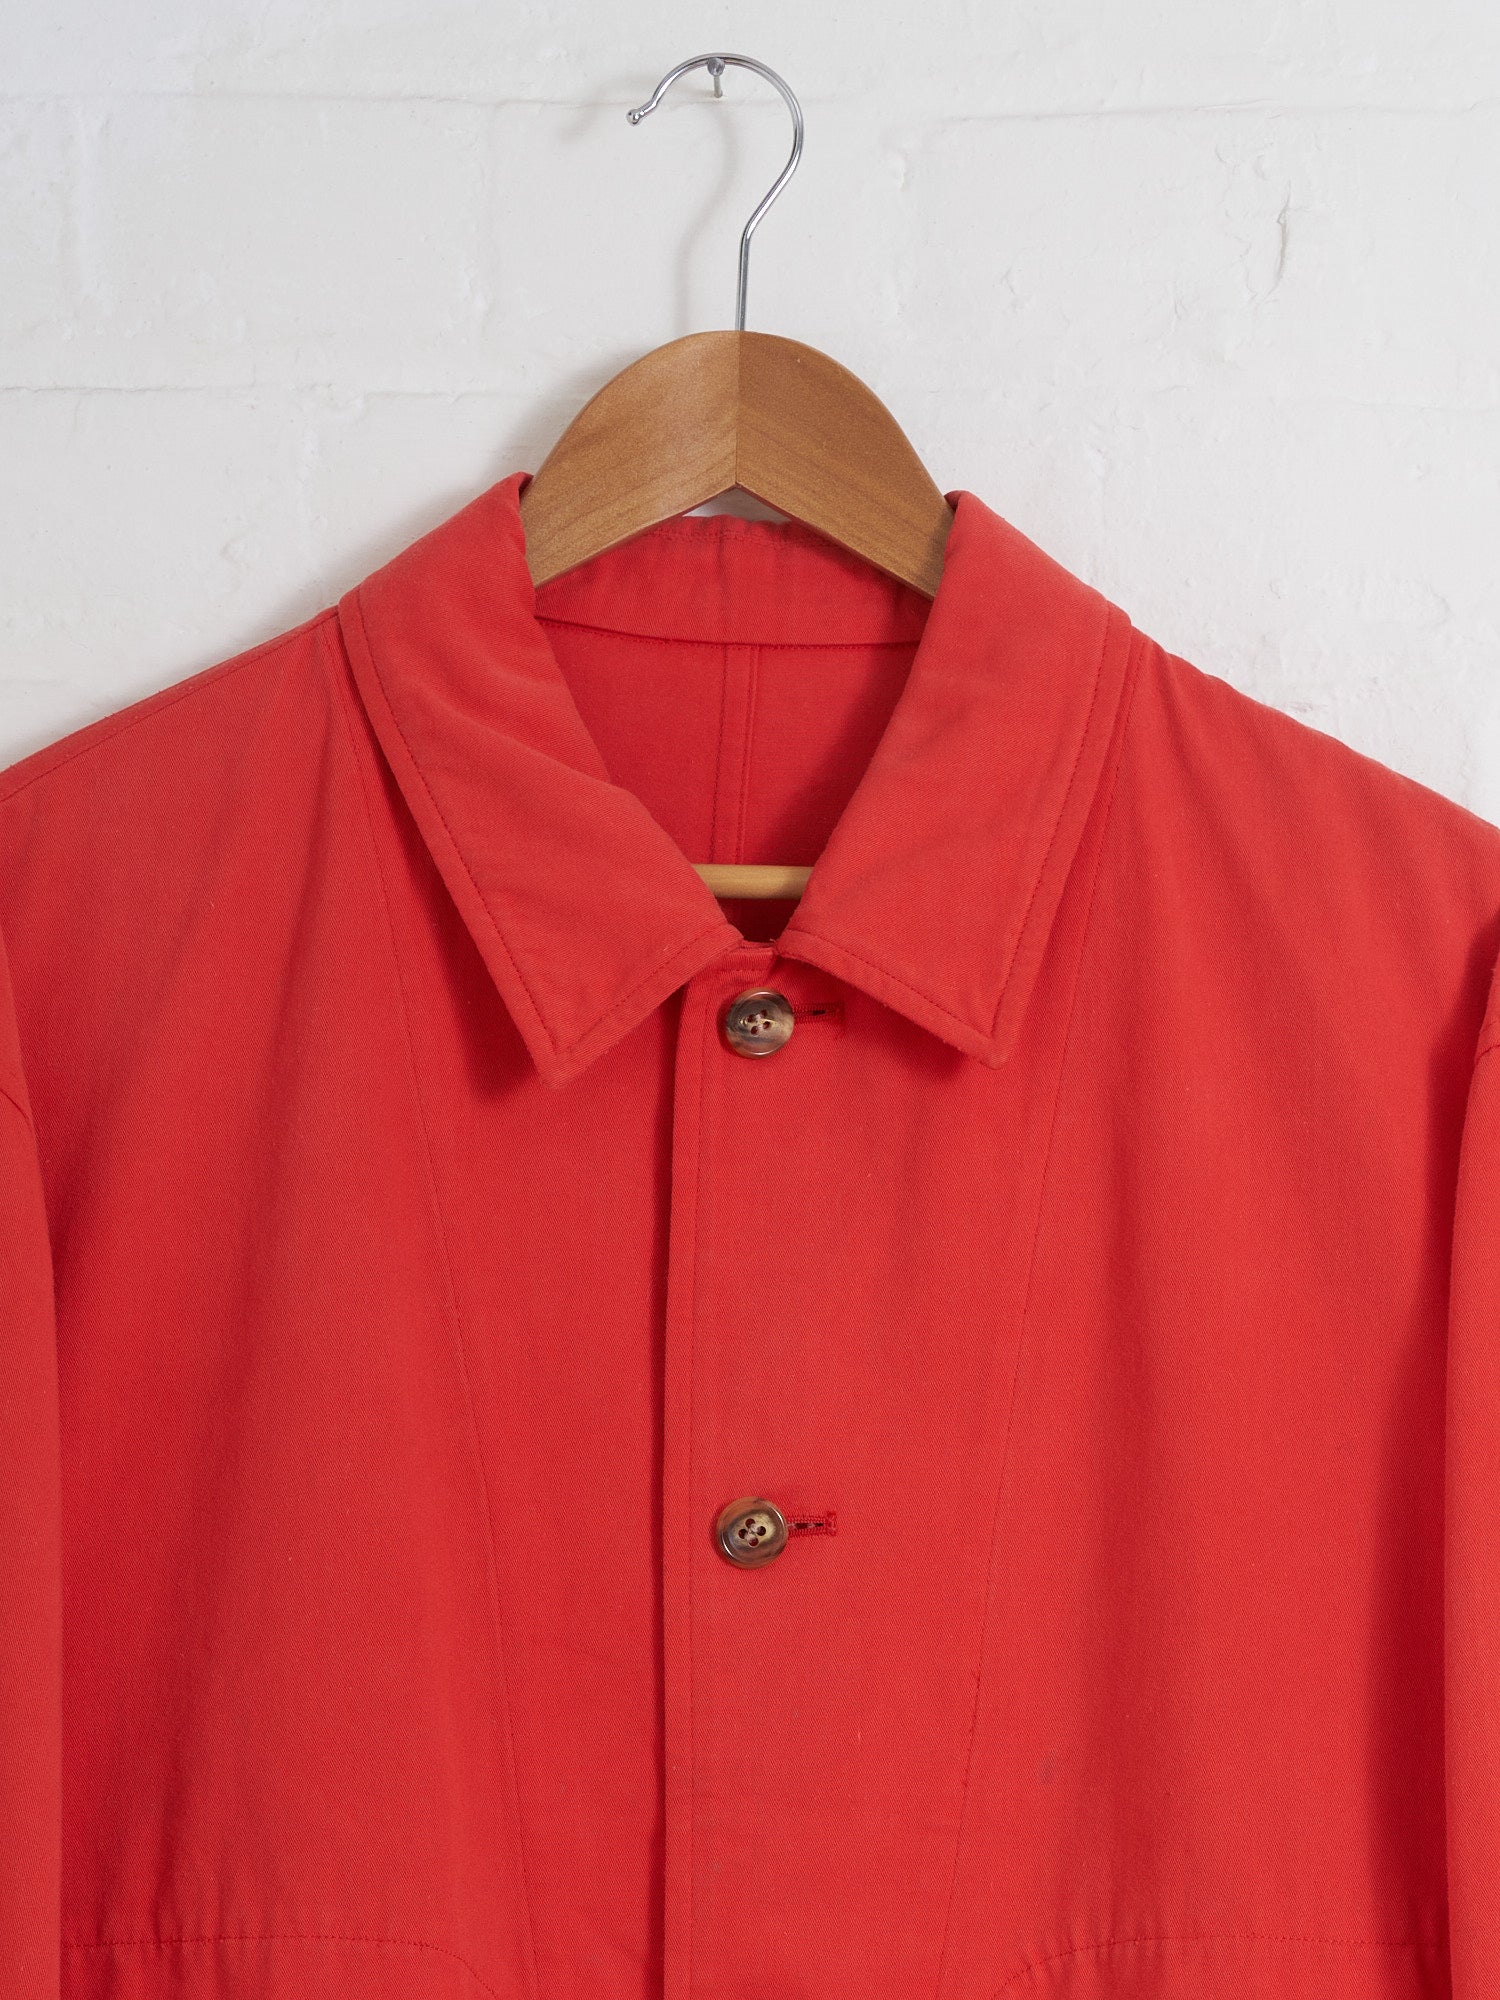 Comme des Garcons Homme Plus 1990 faded orange-red cotton work jacket - M L